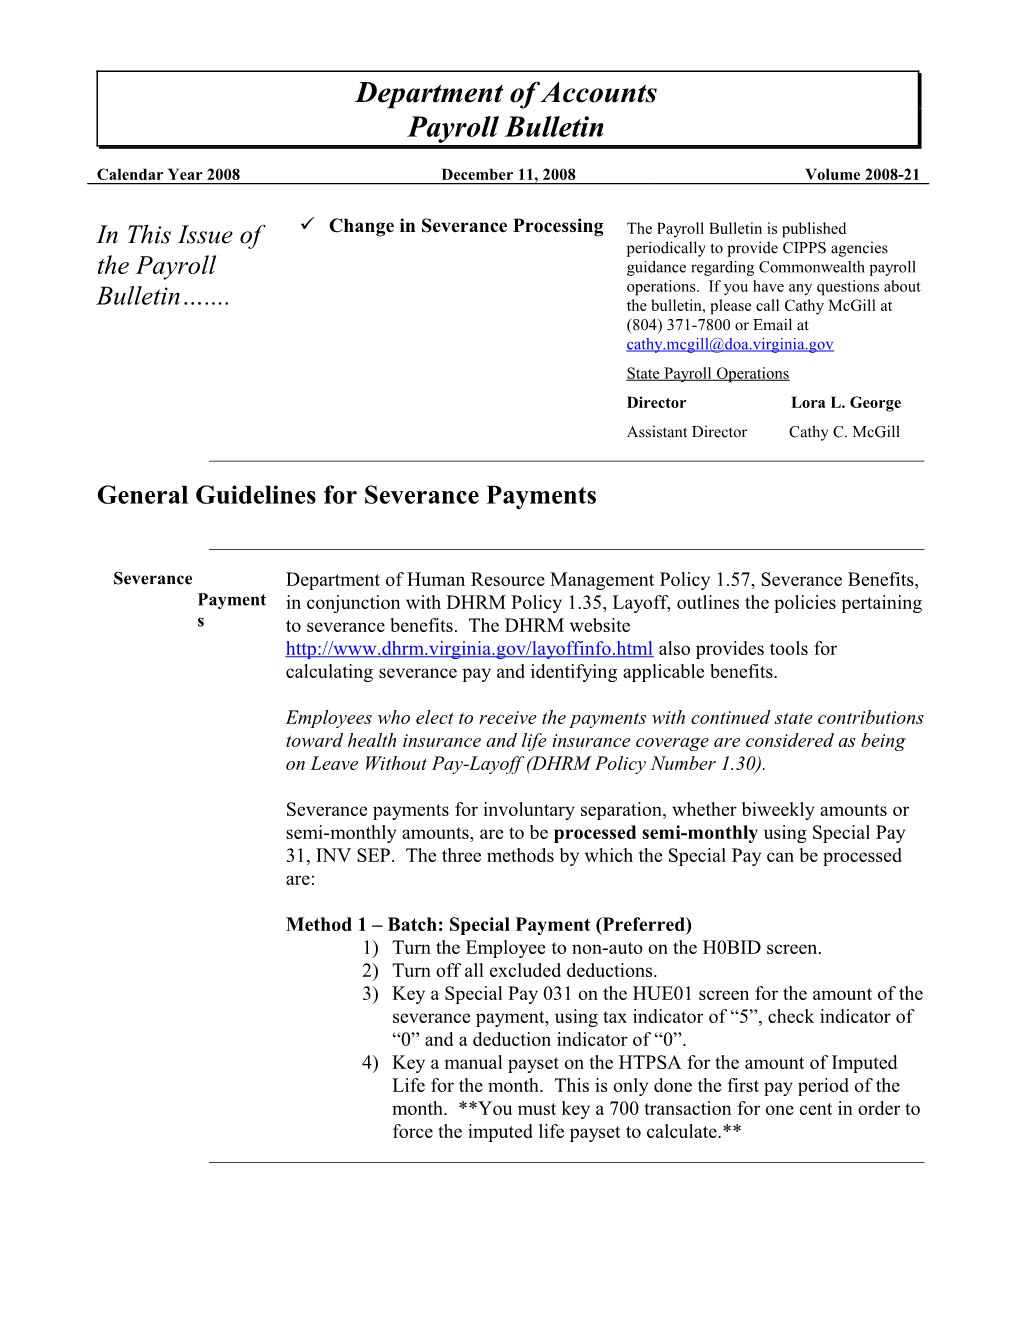 DOA Payroll Bulletin - 12-2008